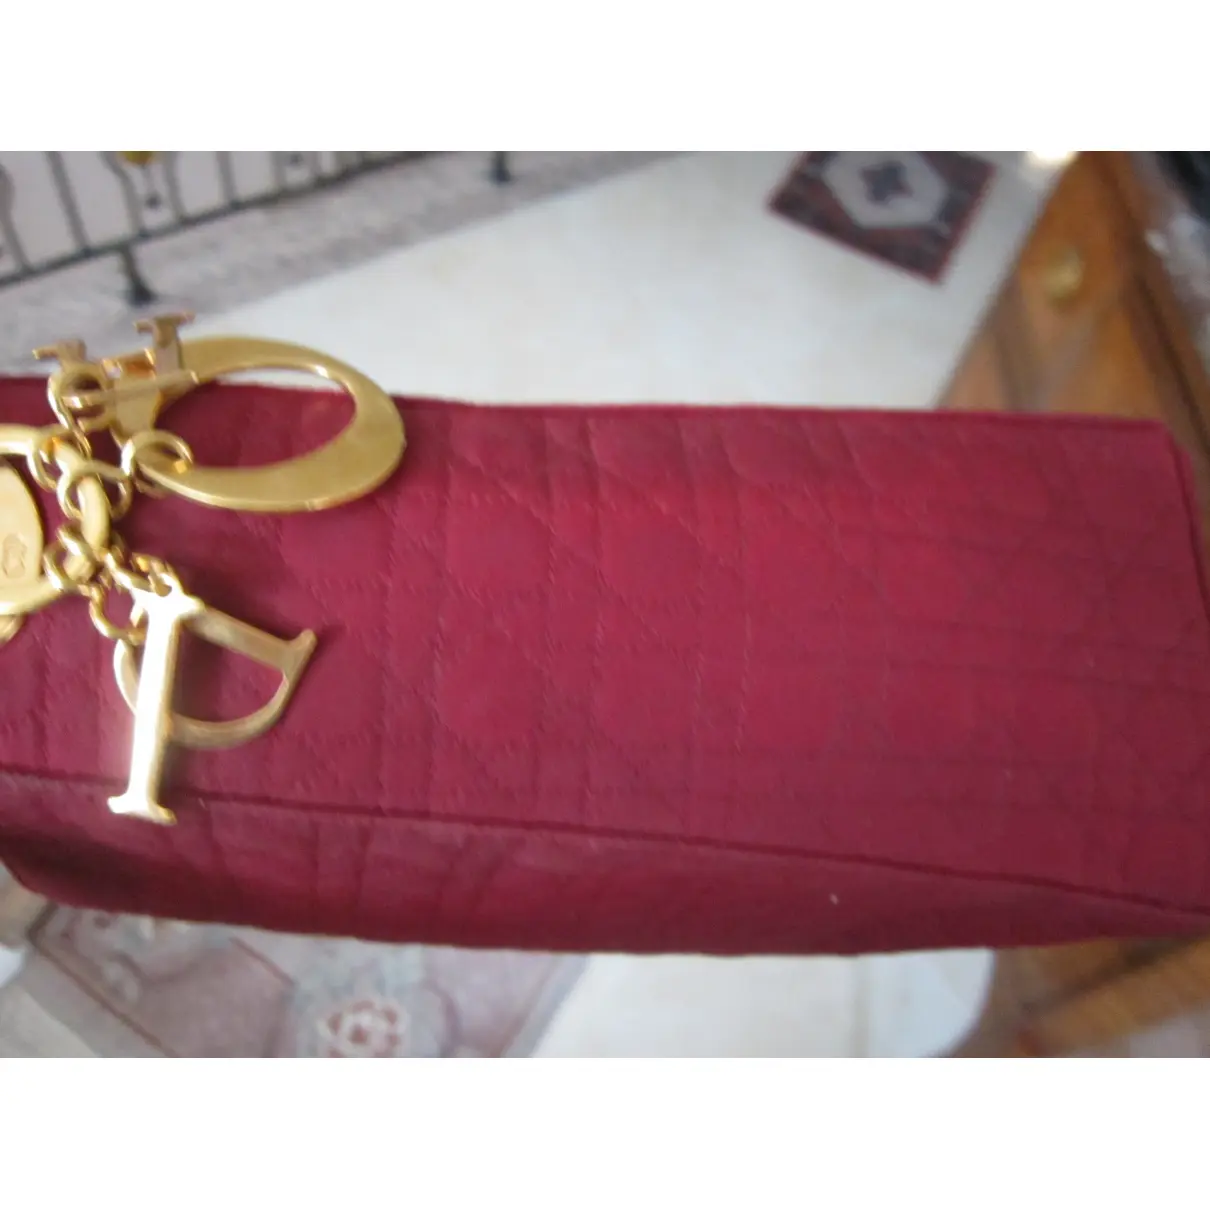 Lady Dior cloth handbag Dior